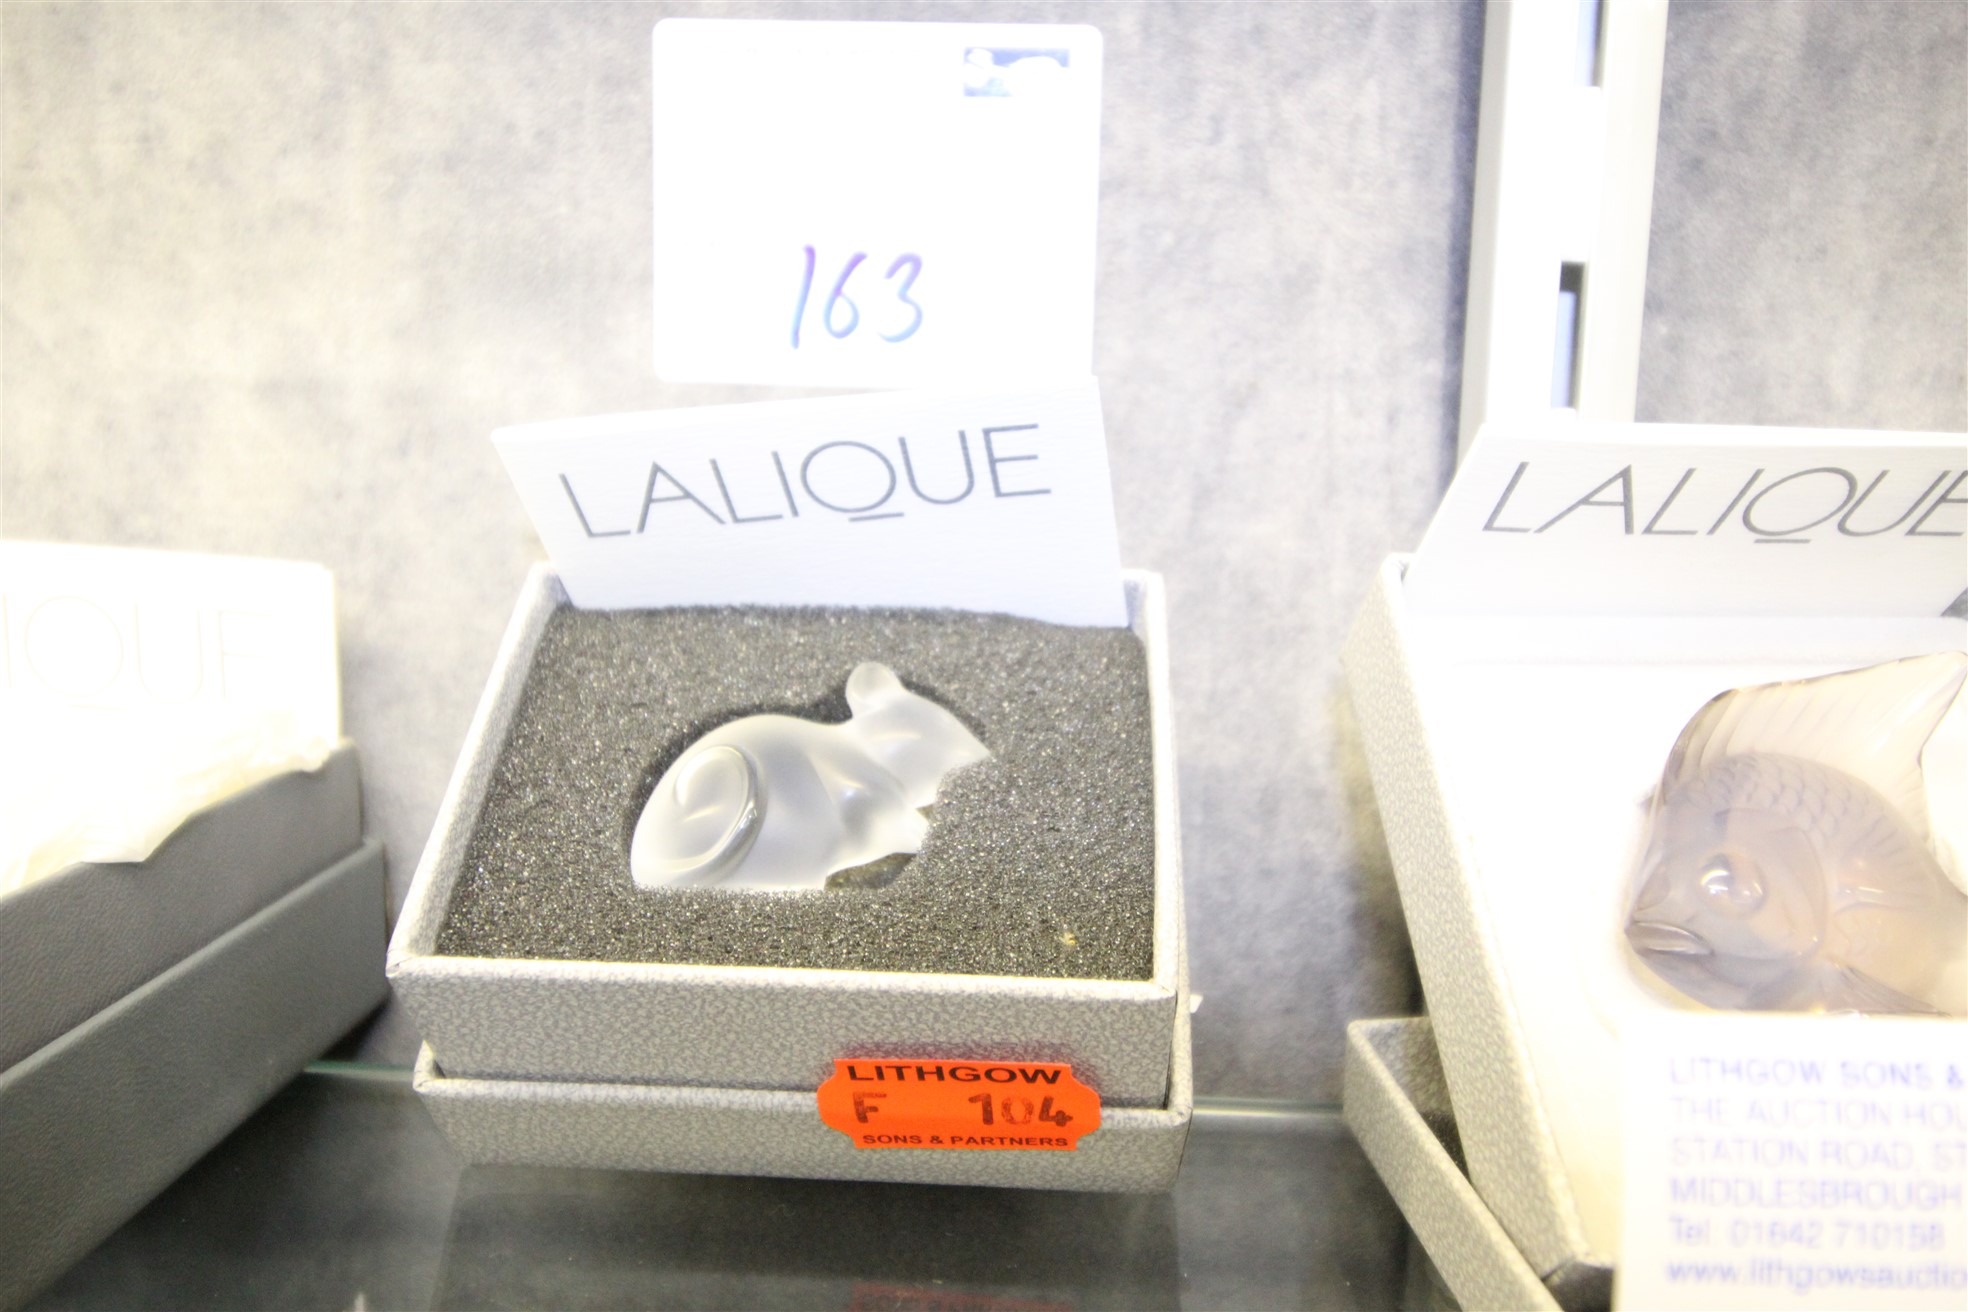 Lot 163 - Lalique Mouse - £55